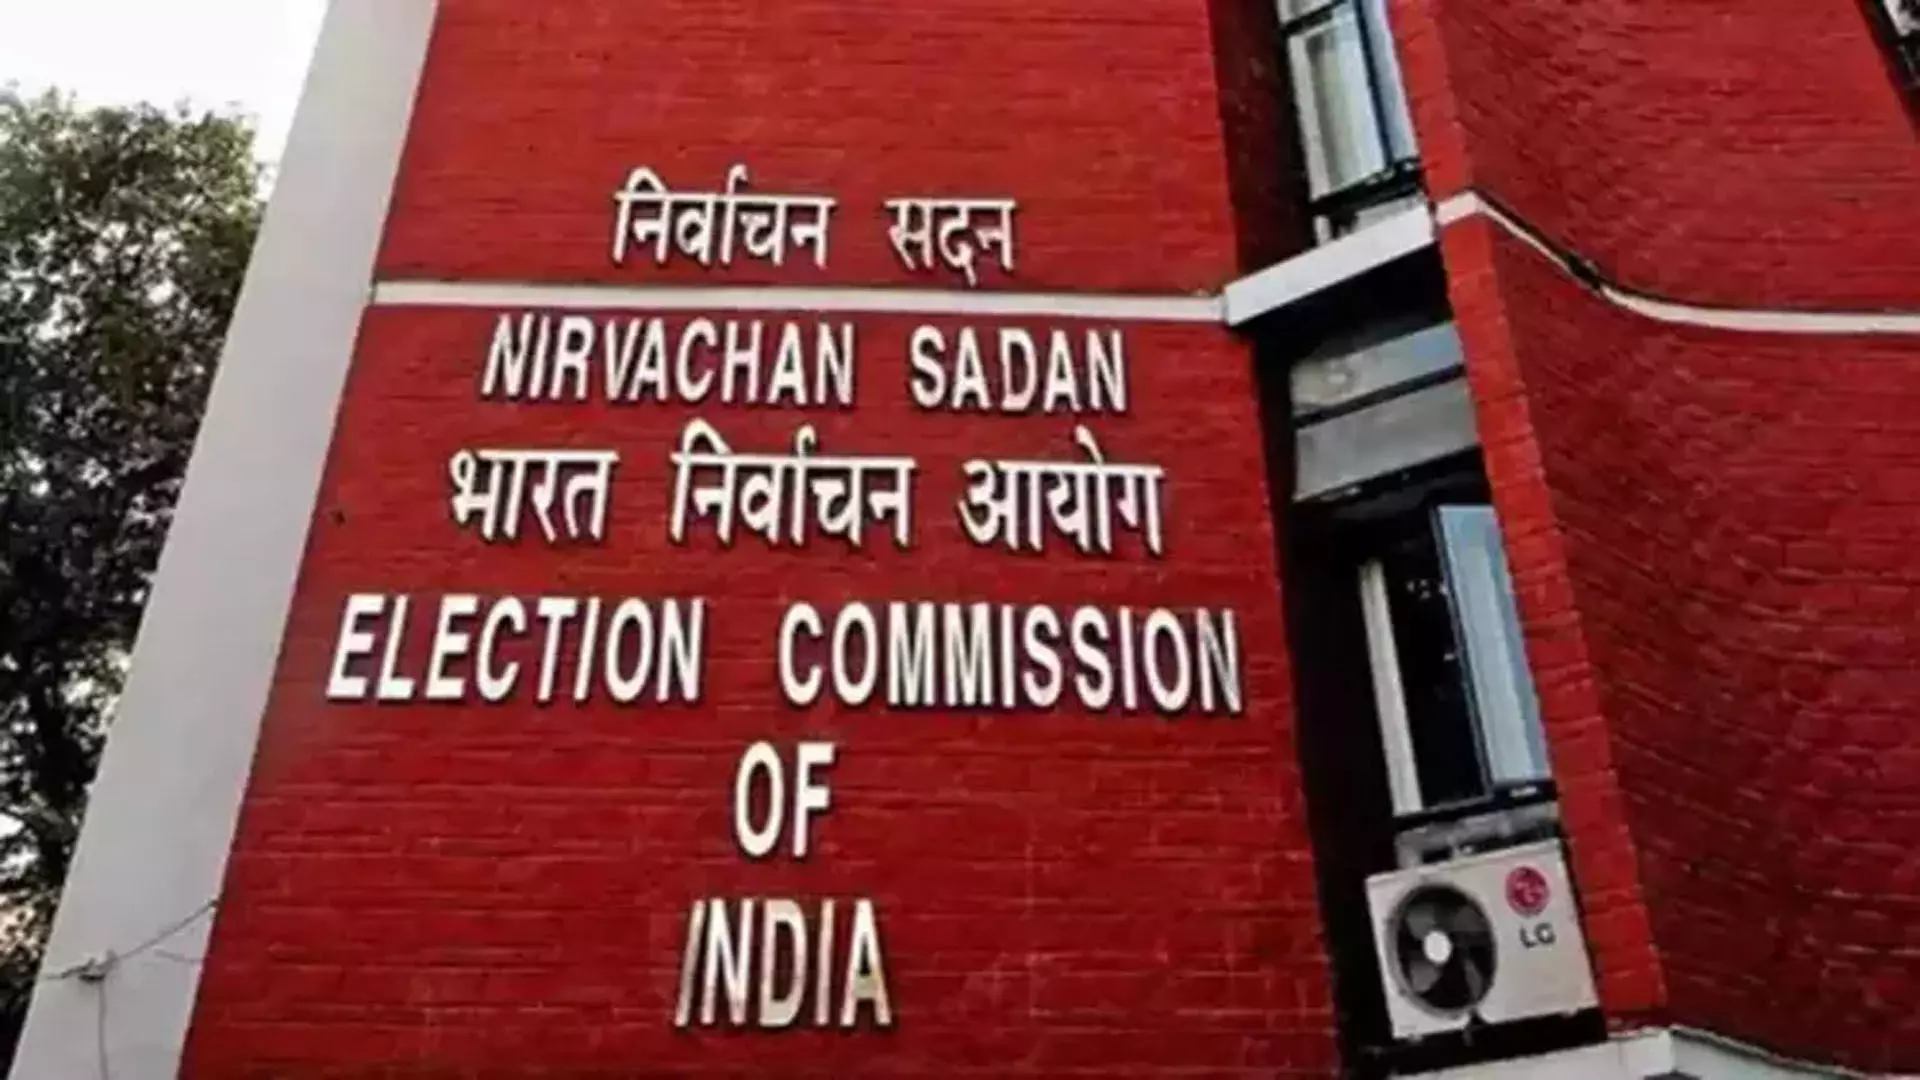 DMK ने चुनाव आयोग से भाजपा उम्मीदवारों से जुड़े सभी स्थानों पर तलाशी लेने का आग्रह किया